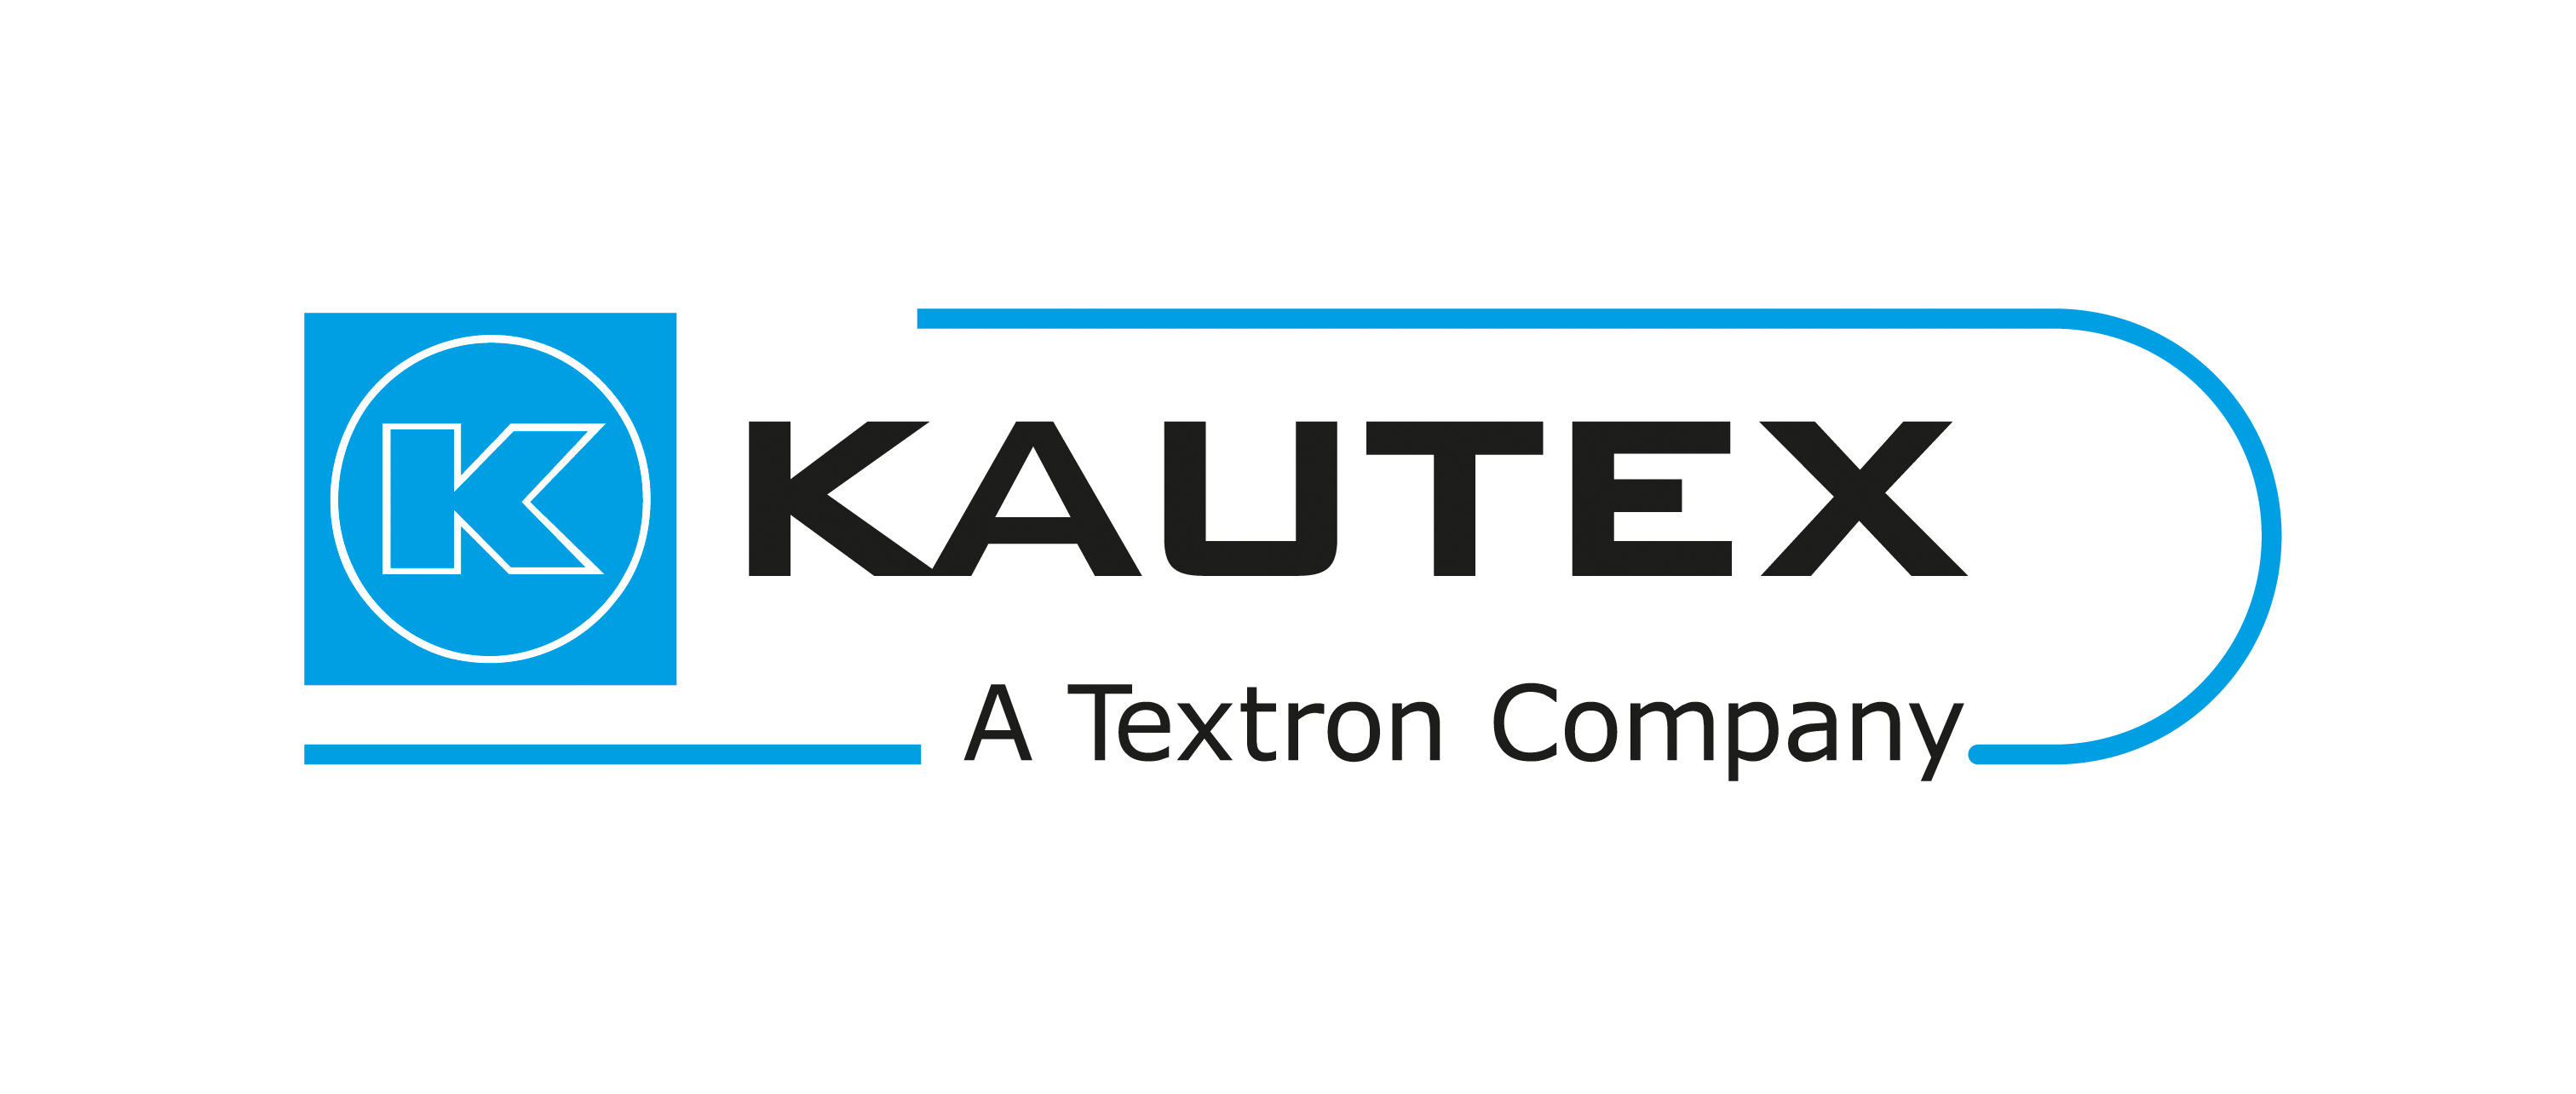 Logo der Firma Kautex. In der Mitte in schwarz der Schriftzug KAUTEX, darunter kleiner der Text A Textron Company. Links ein Blaues Quadrat mit einem weissen Kreis, in dessen Mitte sich der Buchstabe K mit weissen Umrissen bildet. Oben eine blaue Linie, die sich rechts in einem Halbbogen nach unten vorsetzt und wieder nach links läuft.